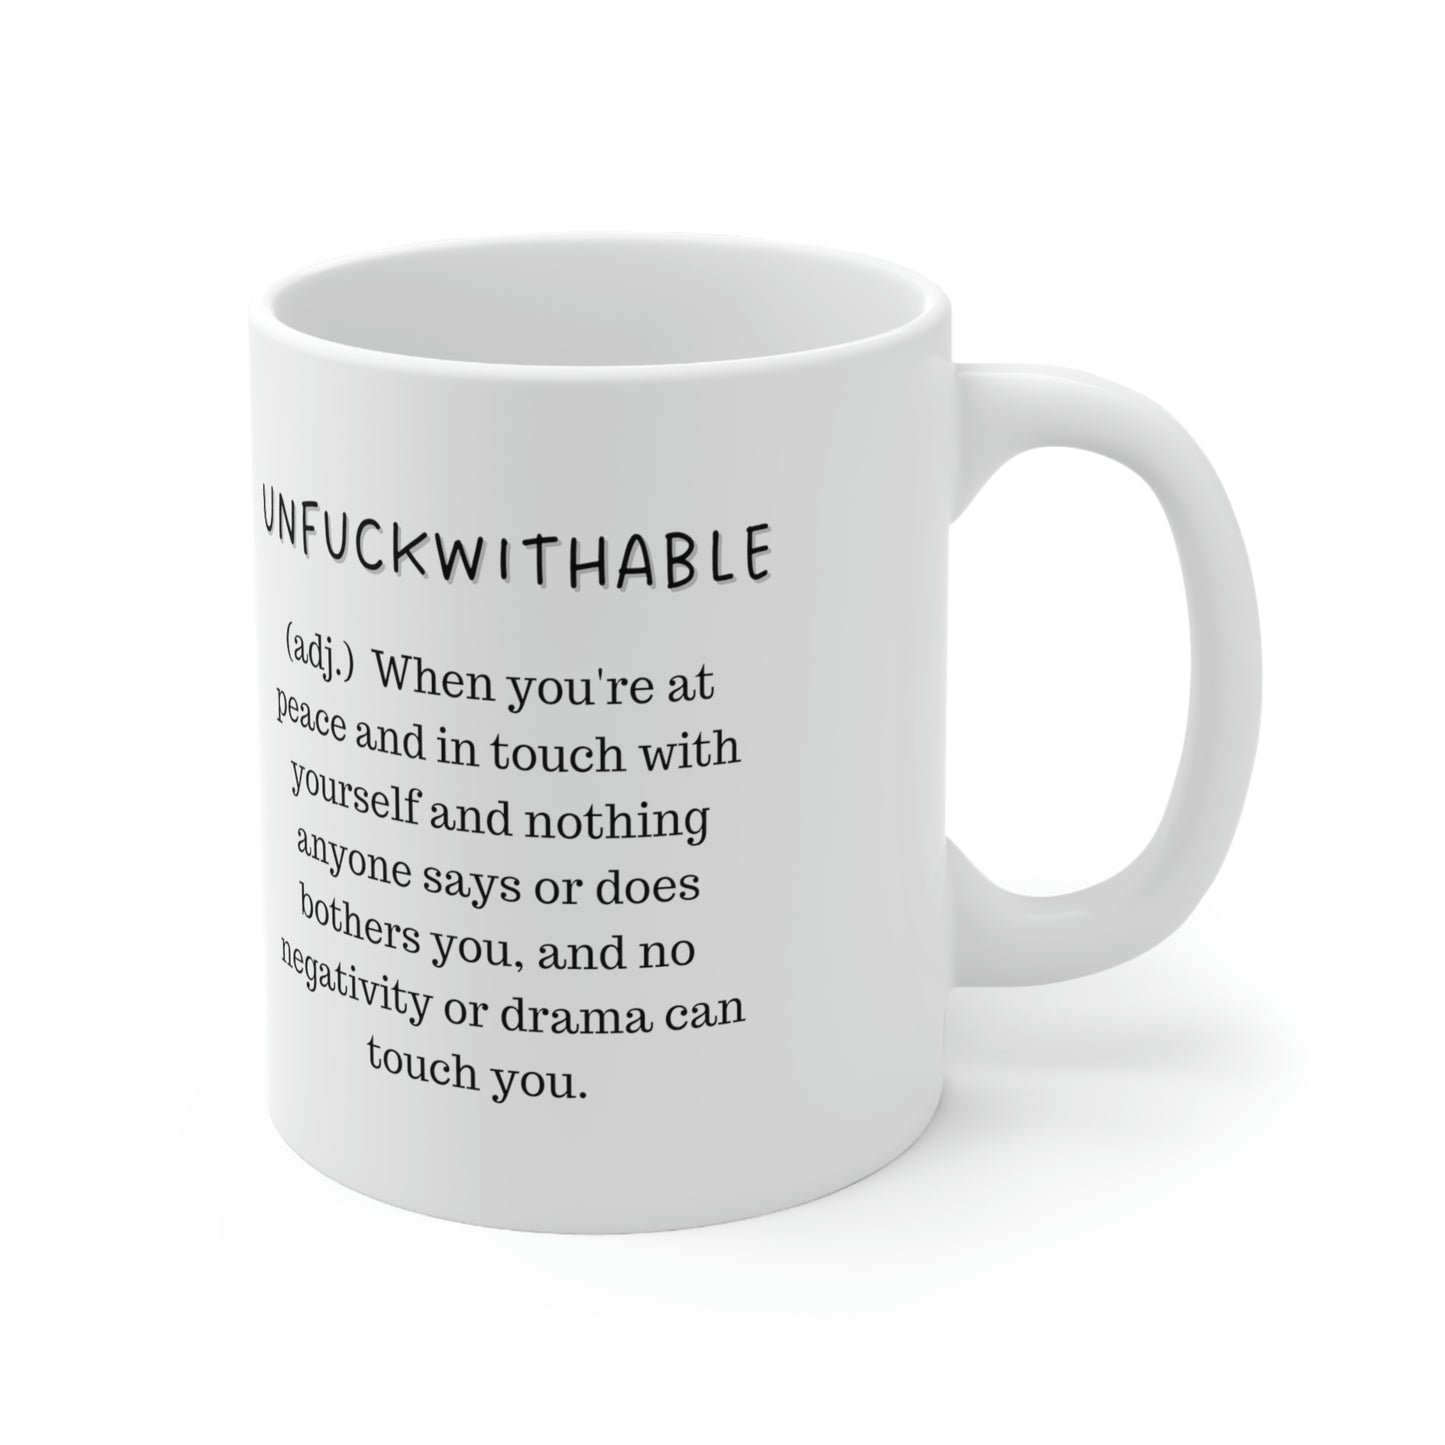 Unfuckwithable Coffee Mug